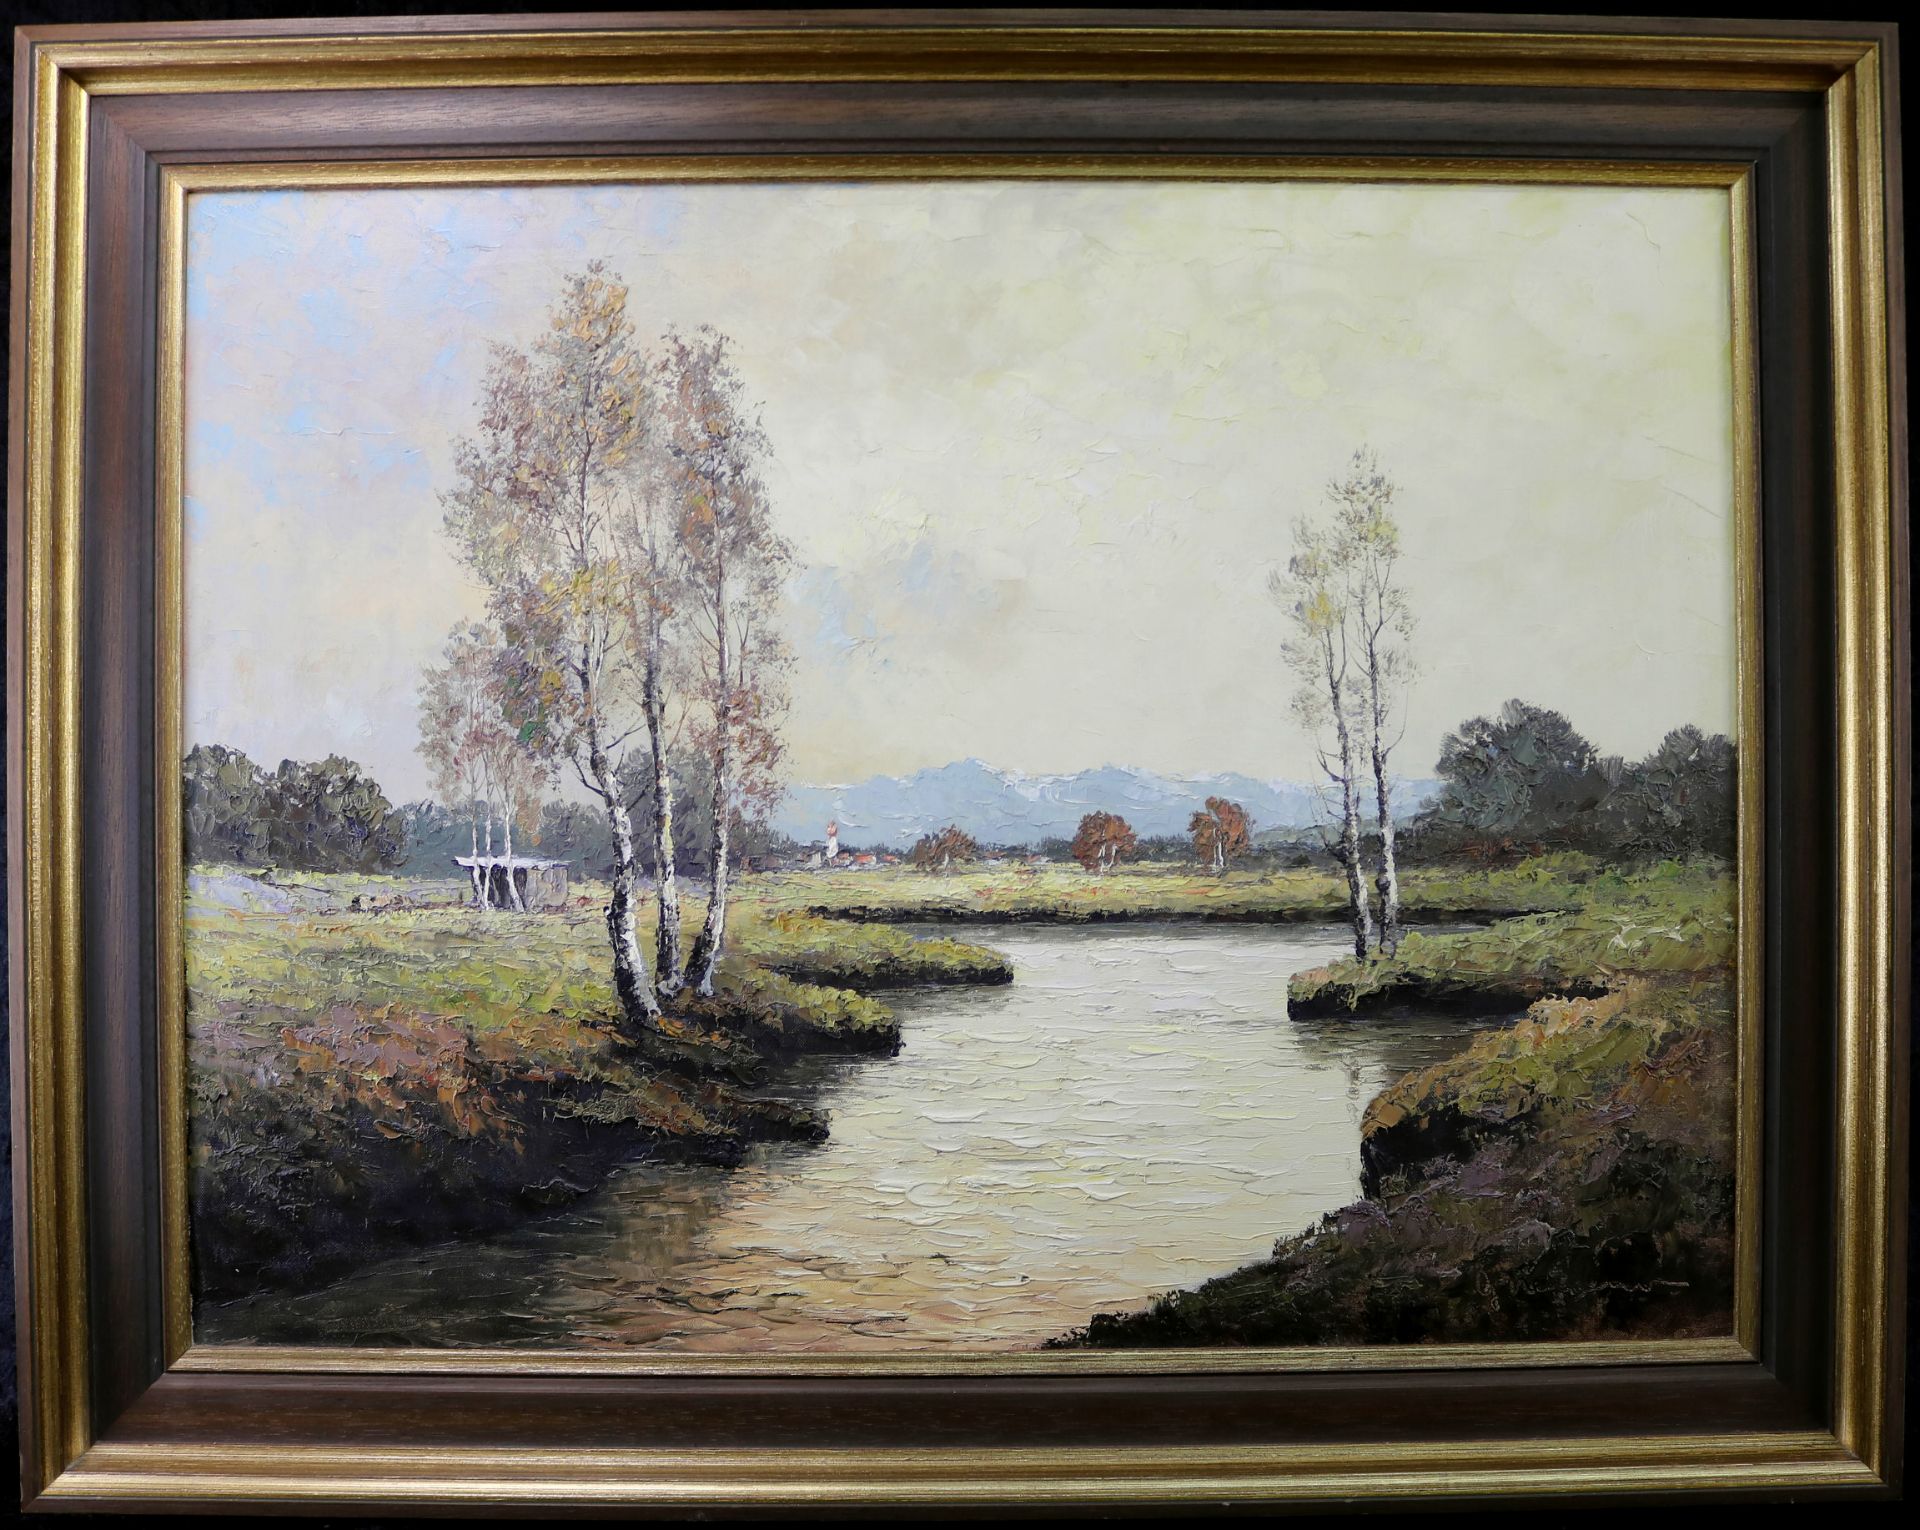 "Birken am Wasser", undeutl. signiert "G. Wegener" (?), Öl/Leinwand, 59 x 78,5 cm